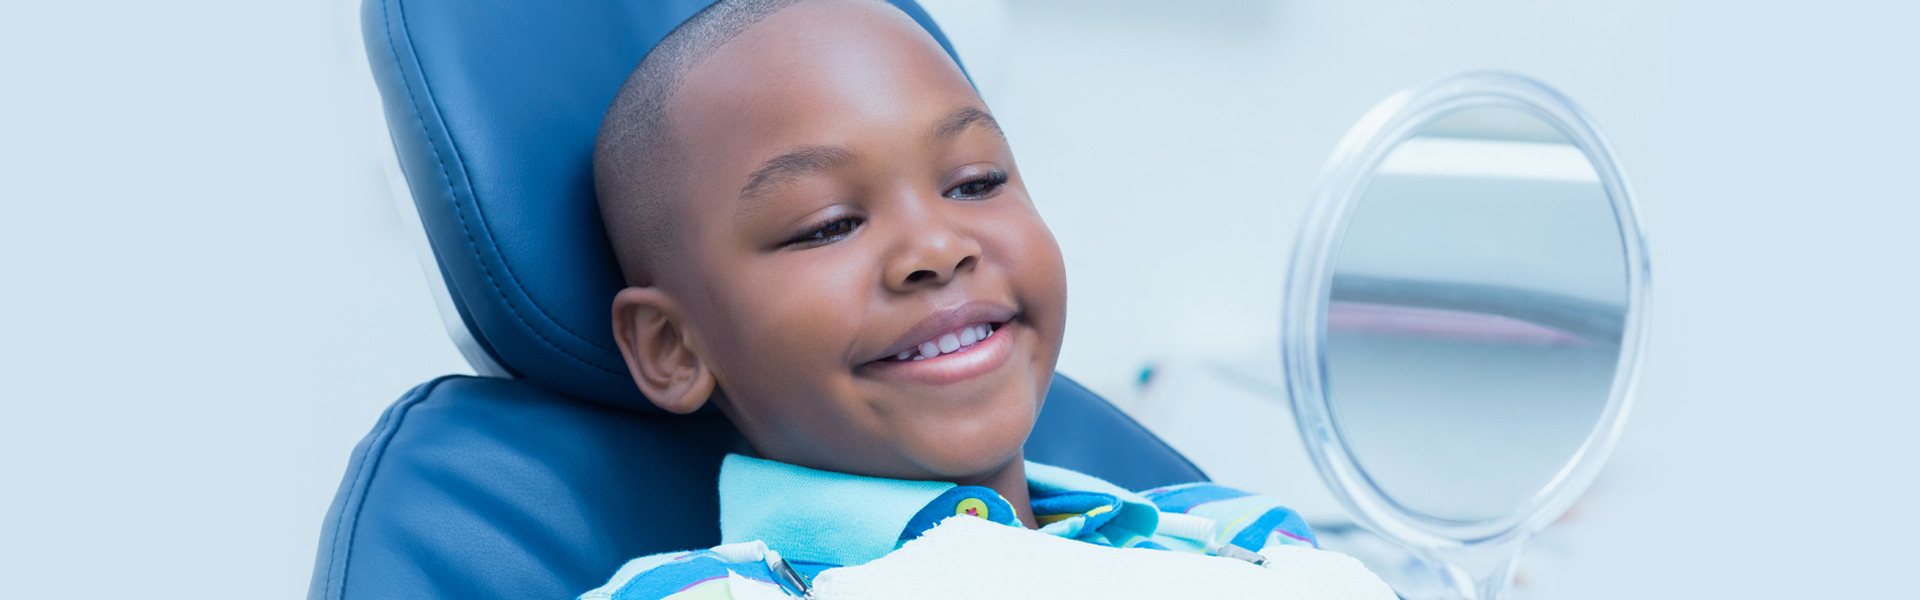 Pediatric Dentistry in Columbia